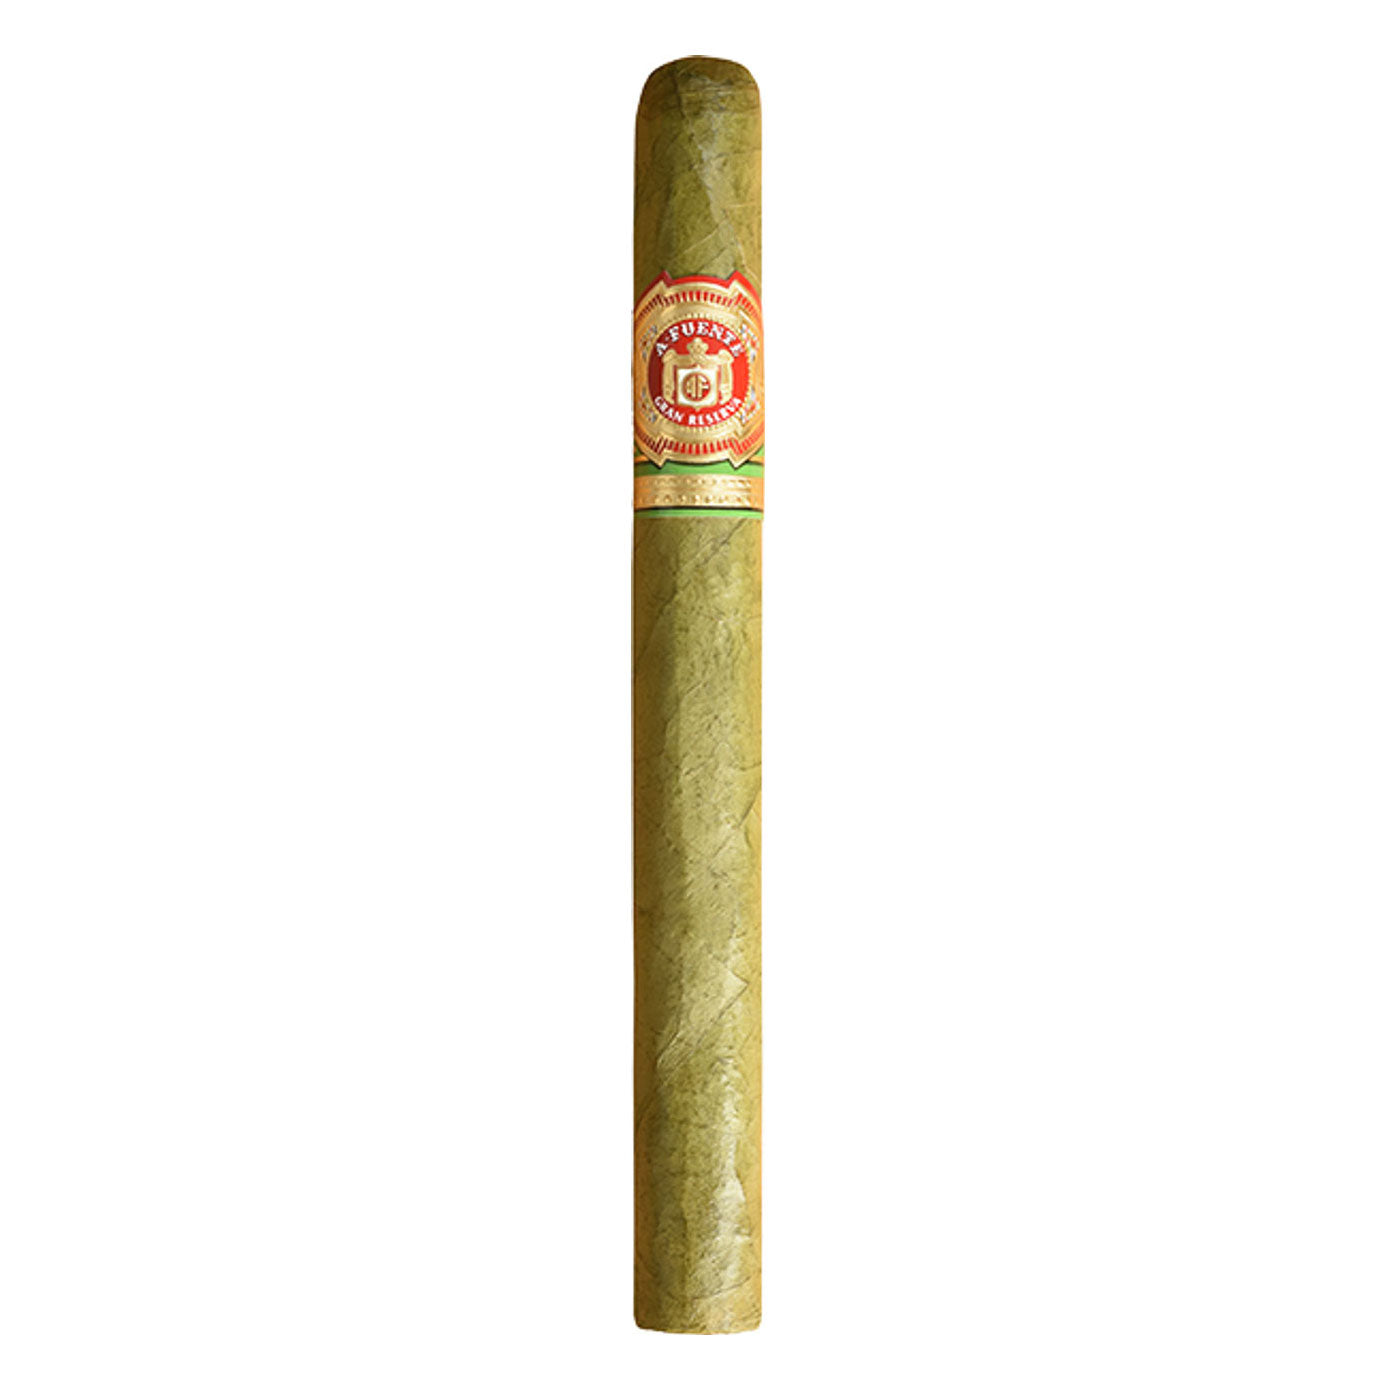 Arturo Fuente Seleccion Privada No.1 Claro 6 3/4 x 44 Single Cigar